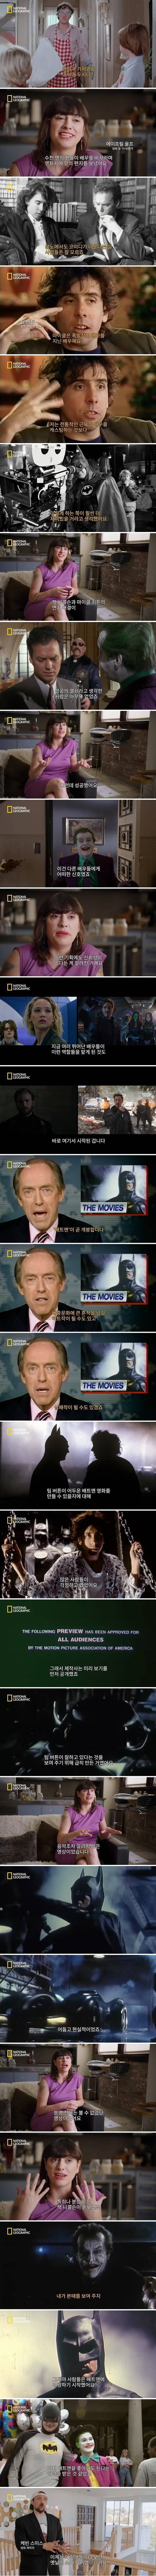 팀버튼의 배트맨이 영화계에 미친 영향력 - 꾸르